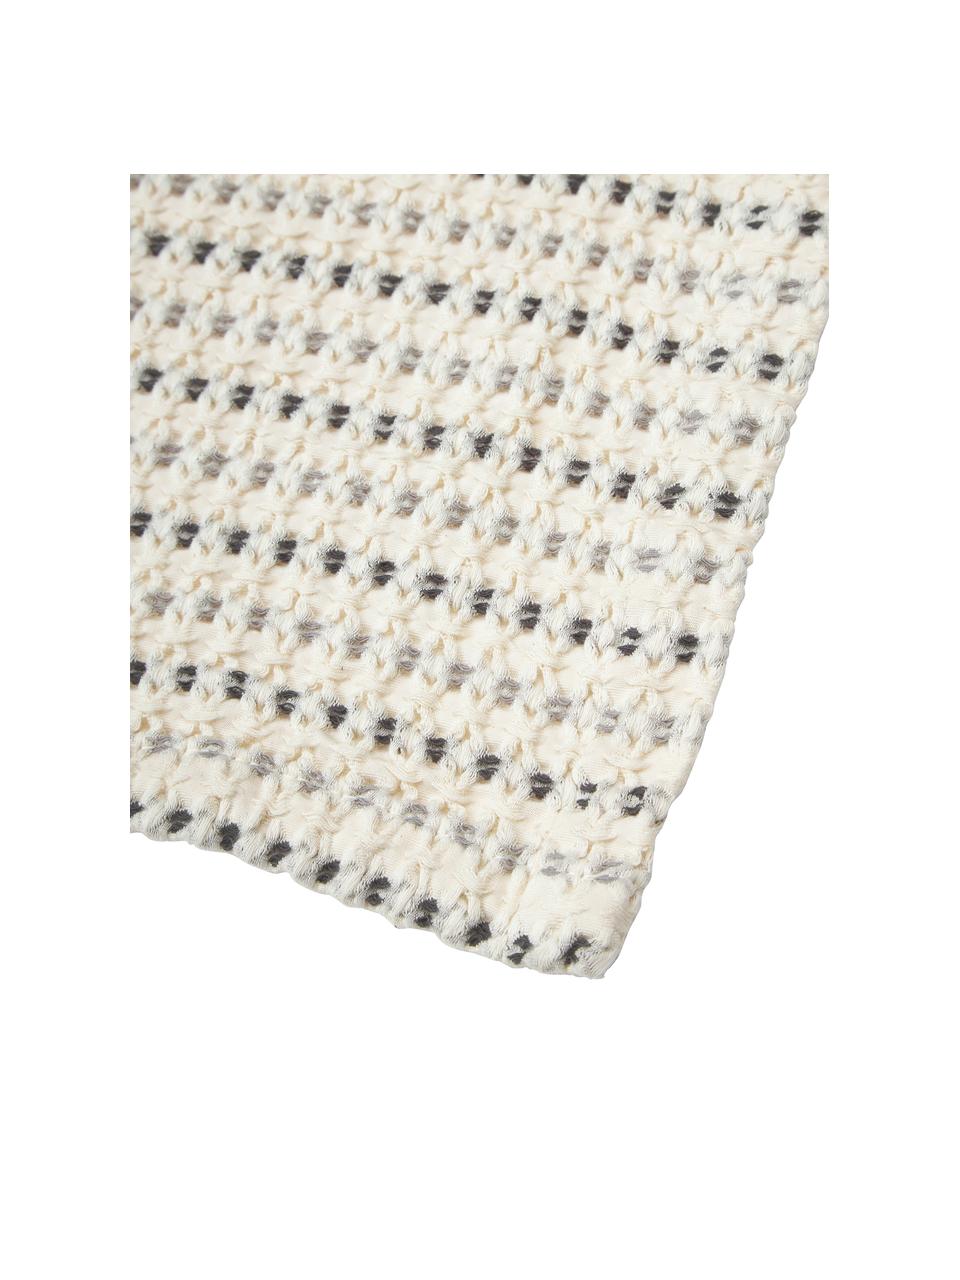 Koc z bawełny Kimber, 100% bawełna, Kremowobiały, odcienie szarego, S 130 x D 170 cm